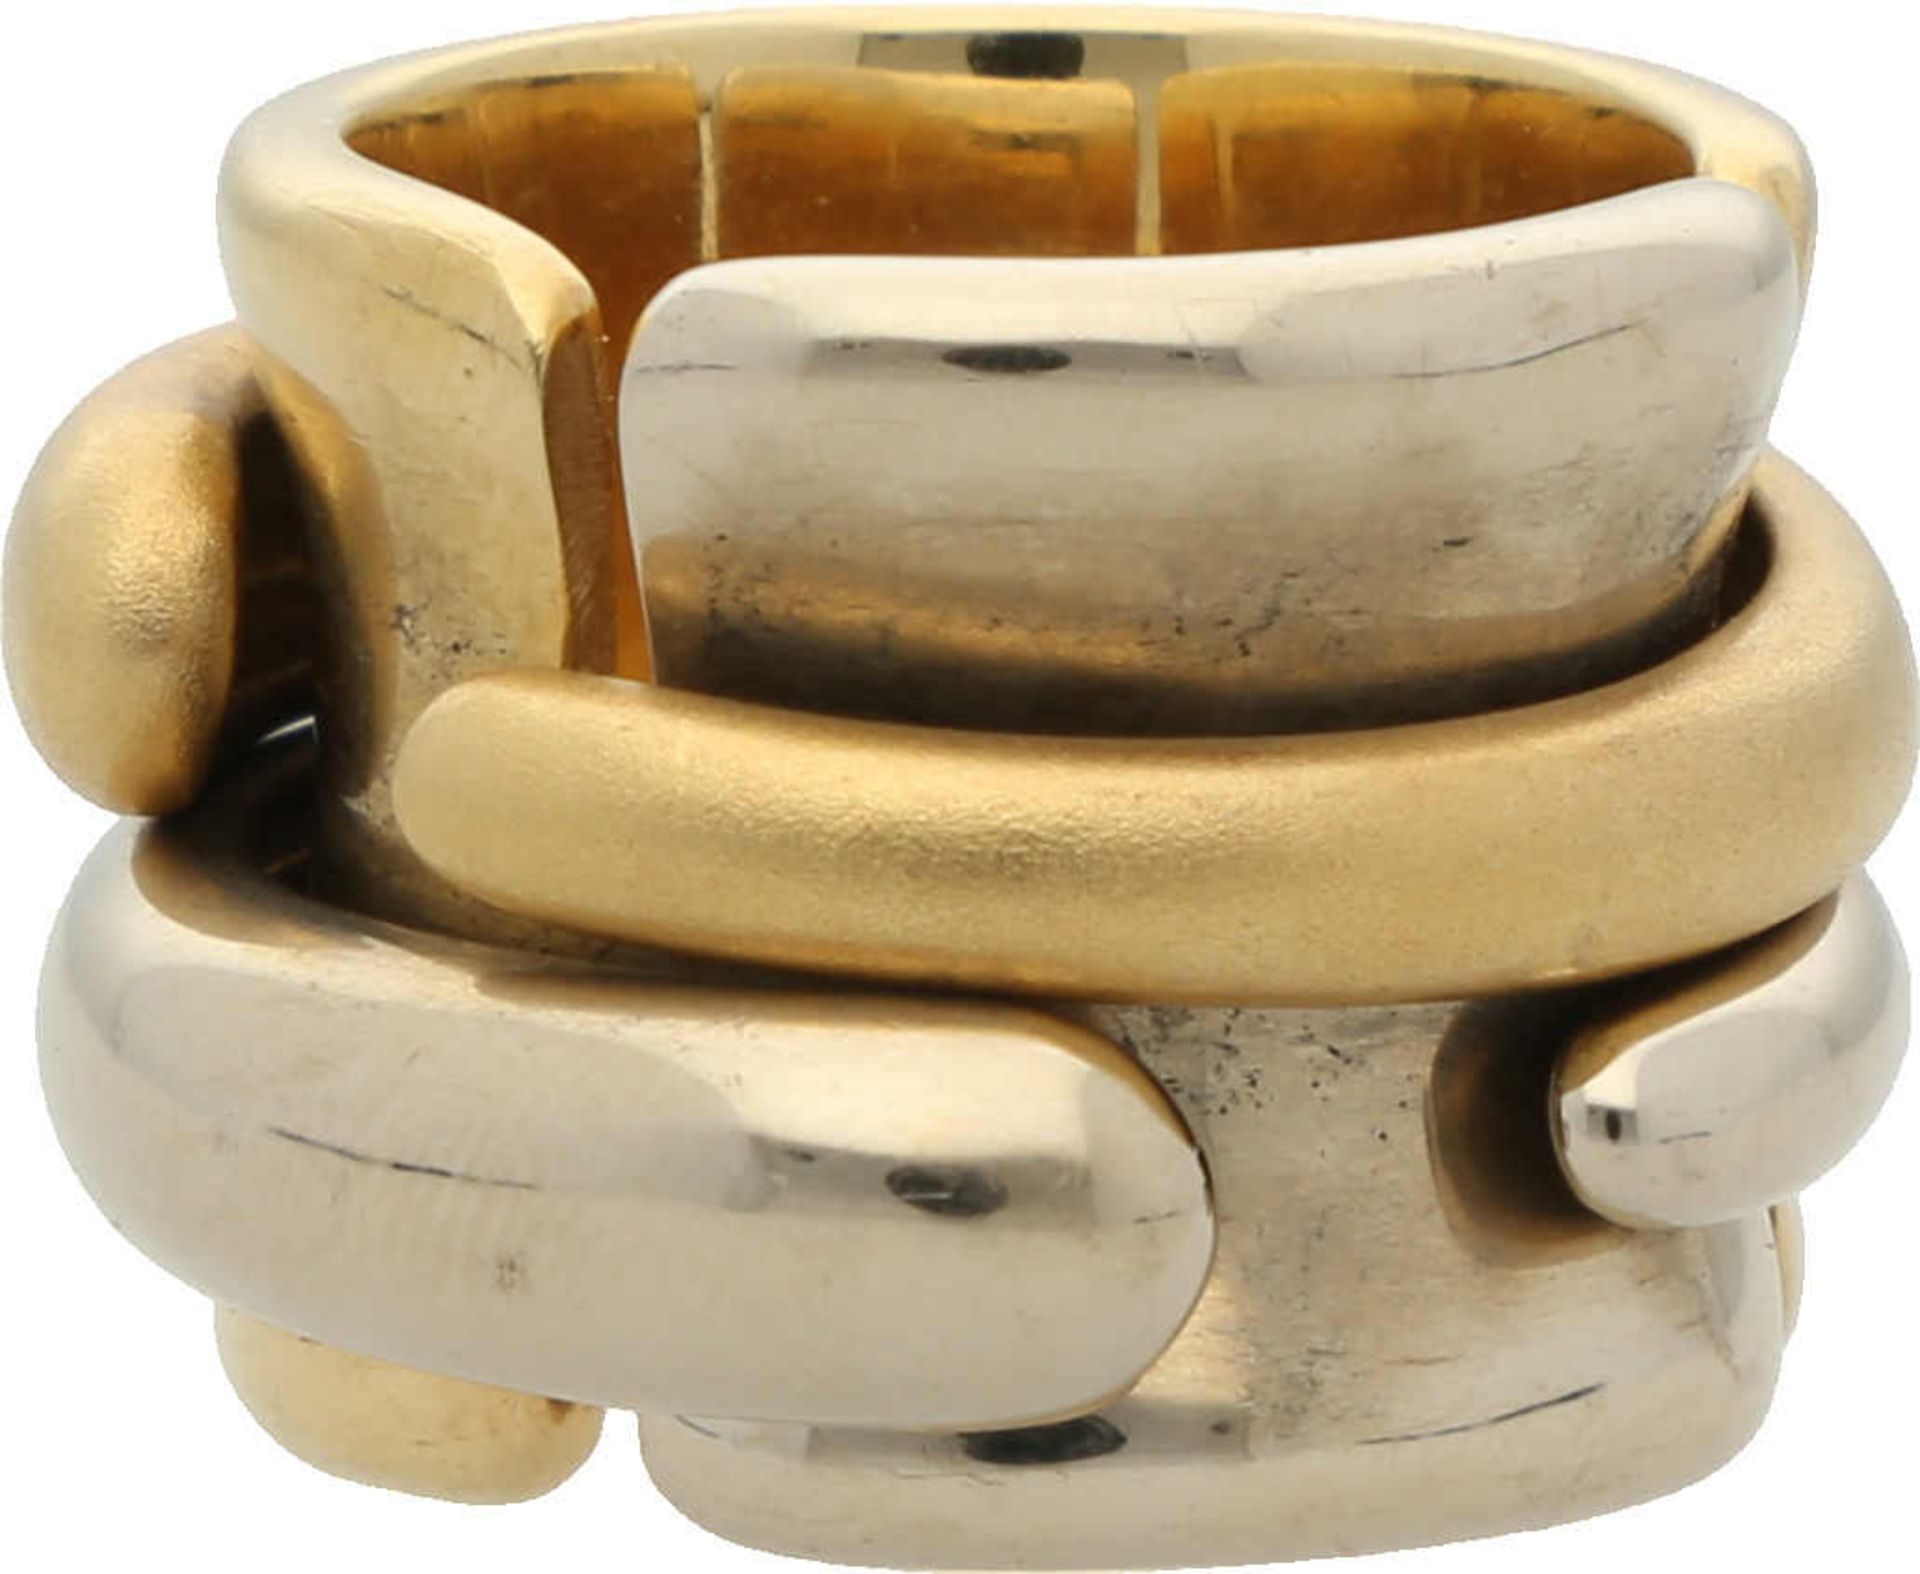 Pomellato Ring Modernes Design in GelbgoldWeissgold 18K mit polierten und satinierten Elementen,